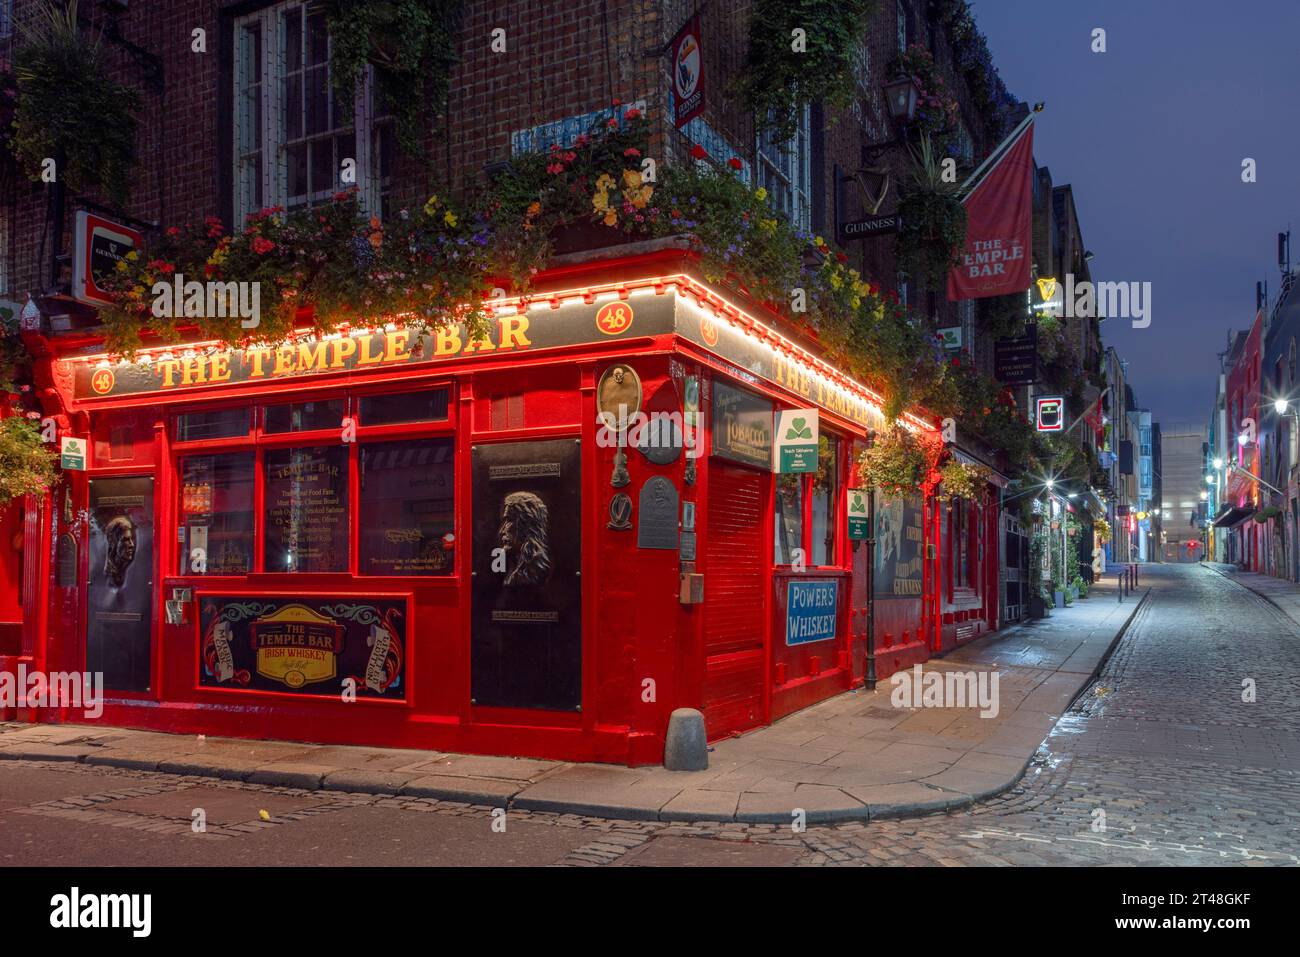 Der Temple Bar Pub ist ein traditioneller irischer Pub in Dublin, Irland, der für seine Live-Musik, lebhafte Atmosphäre und die berühmte Whiskey-Auswahl berühmt ist. Stockfoto